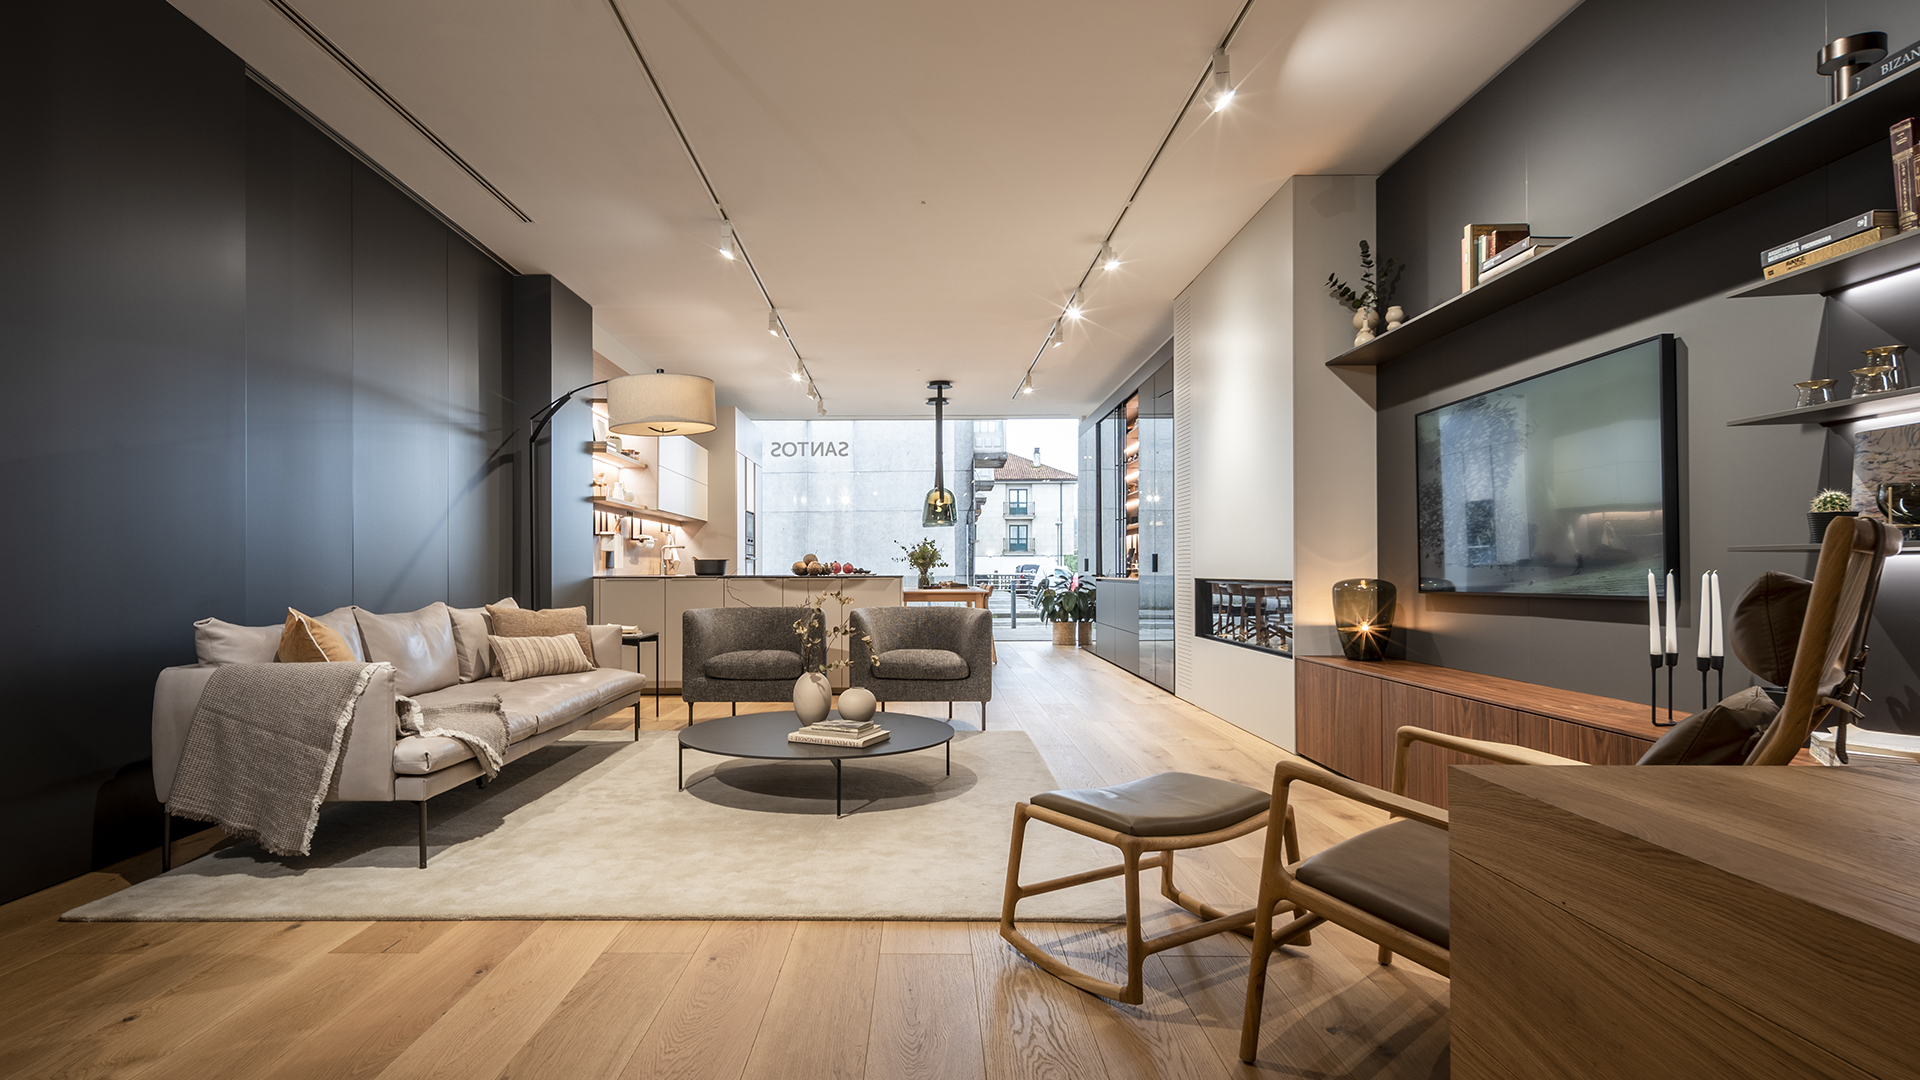 Showroom. Santiago Interiores especialista en diseñar hogares prácticos y modernos